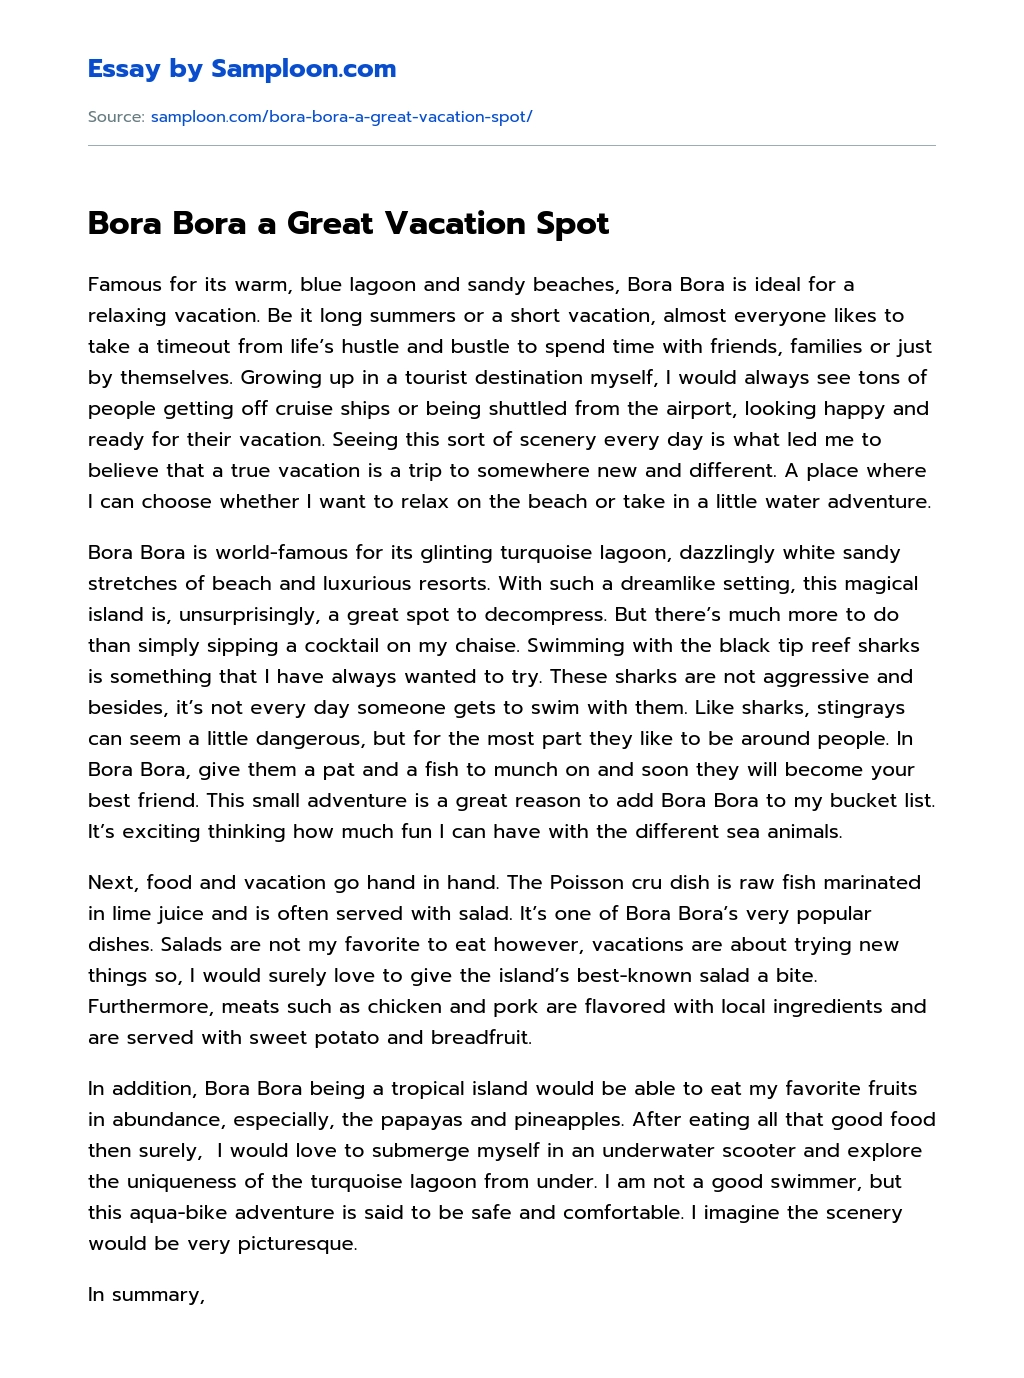 Bora Bora a Great Vacation Spot essay